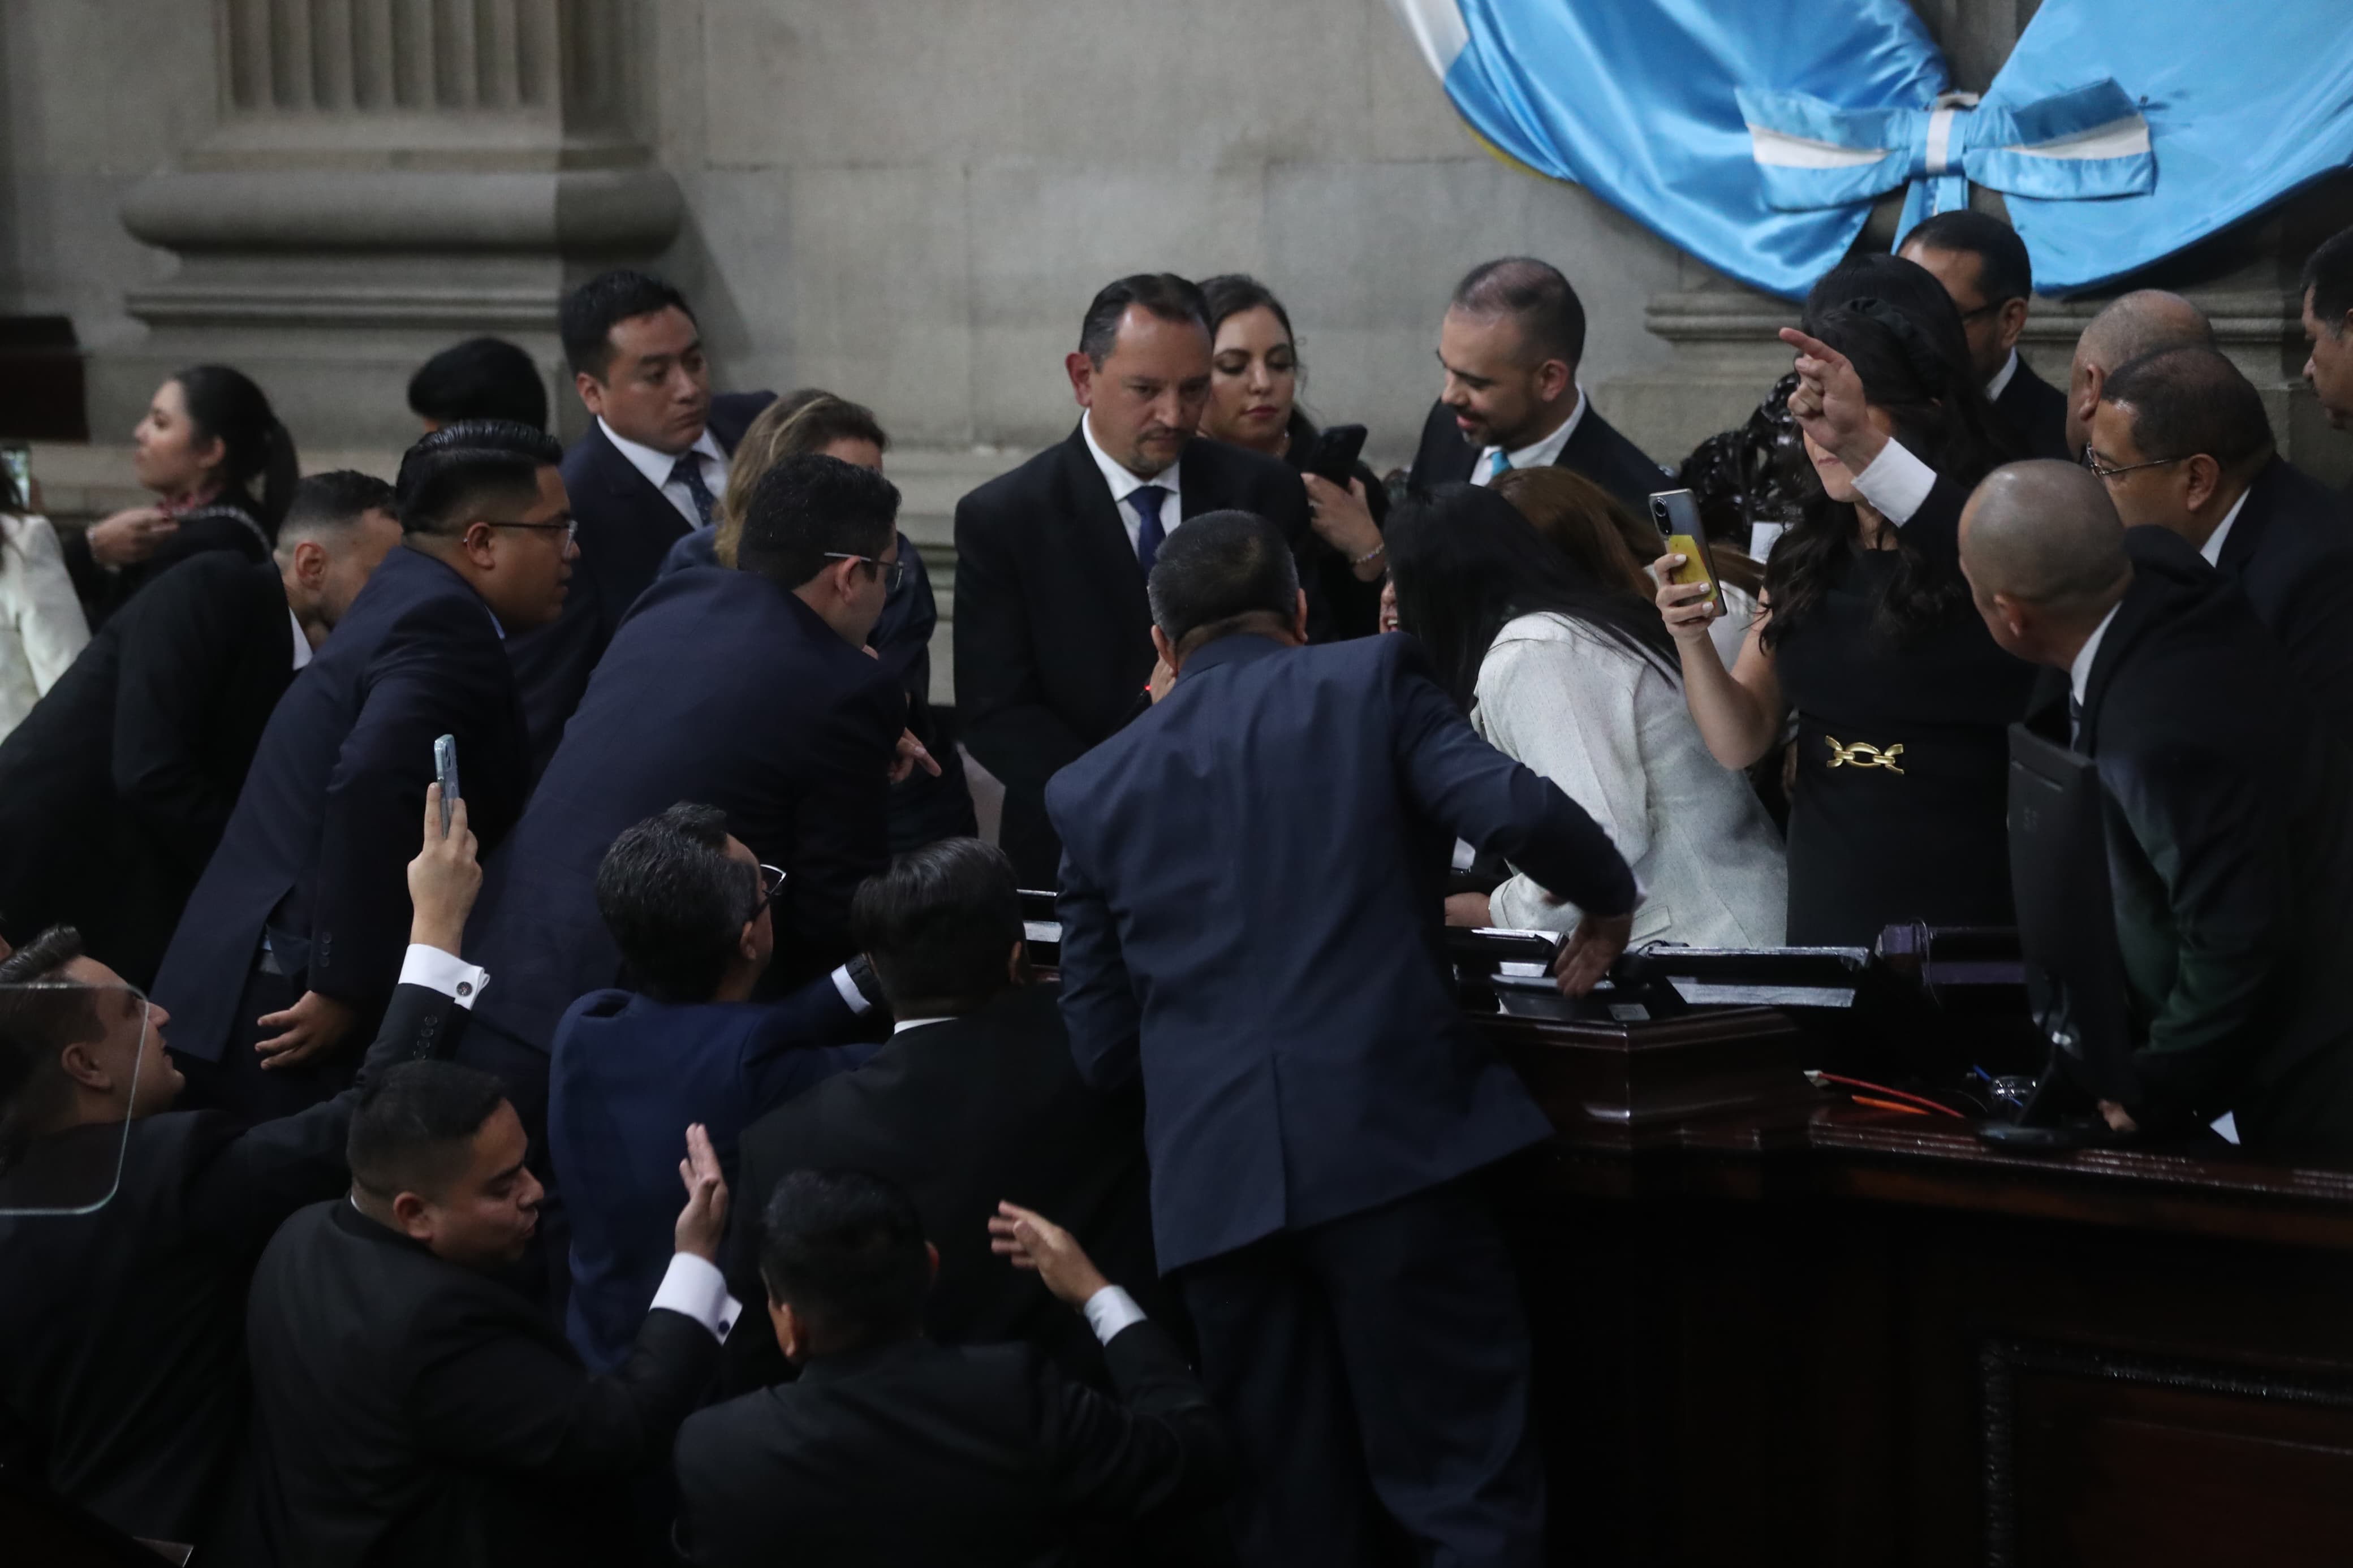 Momento de tensión en la primera sesión de la décima legislatura previo a la elección de la Junta Directiva. Fotografía: Prensa Libre (Erick Avila).